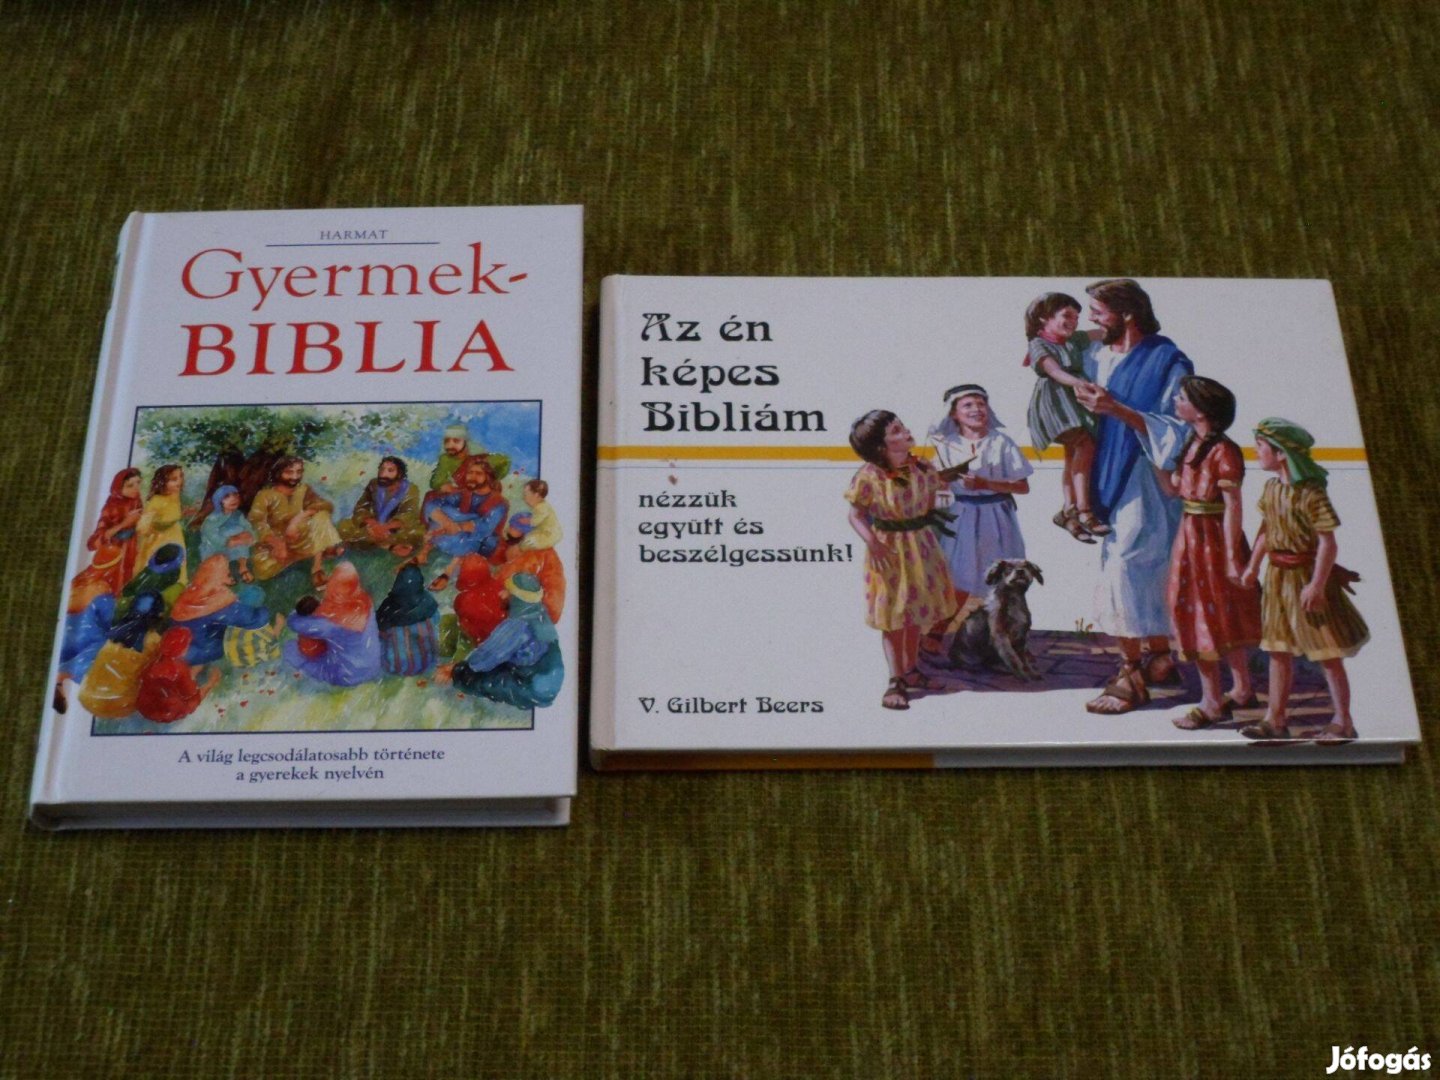 Gyermekbiblia + Az én képes Bibliám